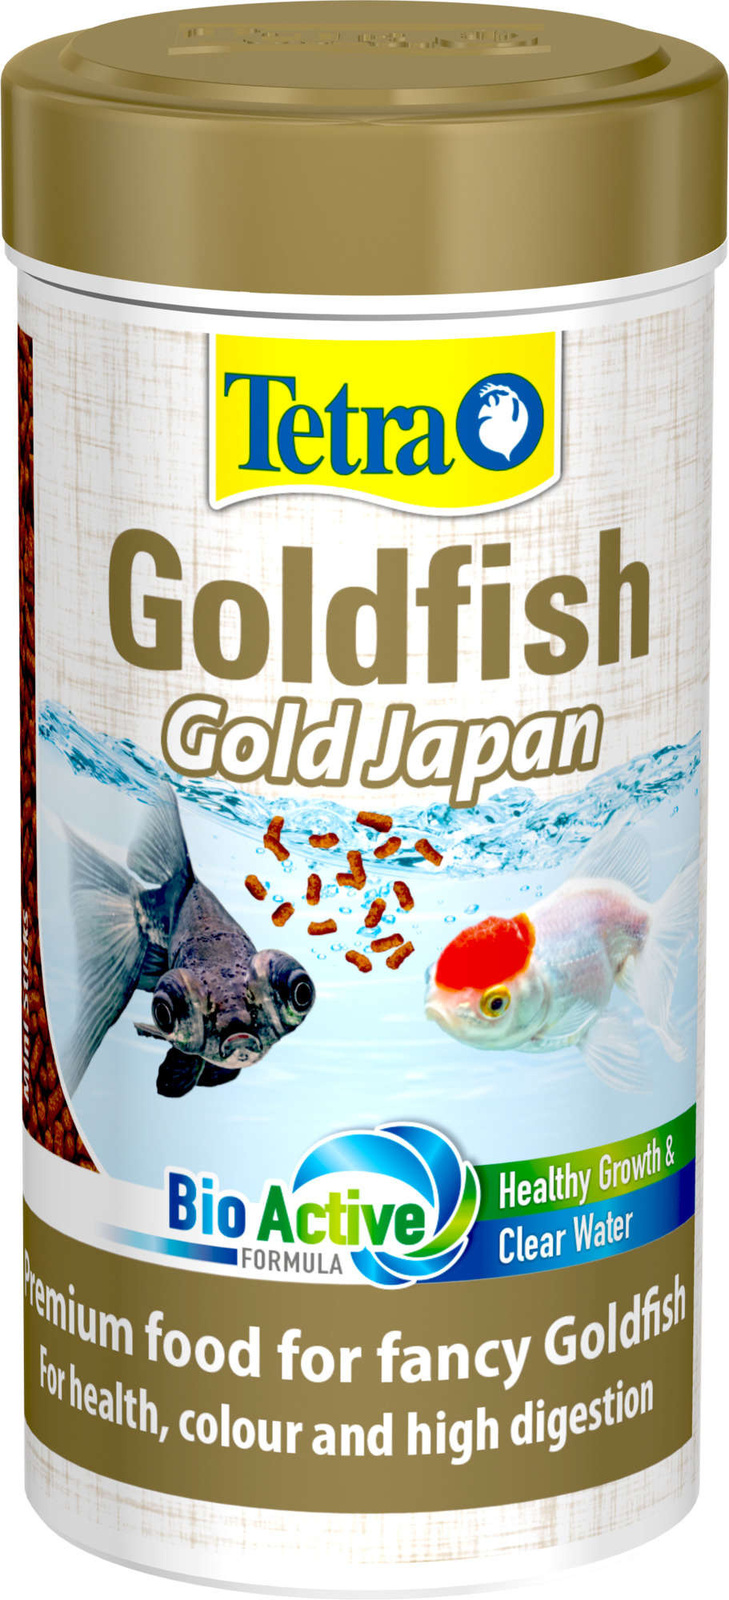 Tetra (корма) корм для селекционных золотых рыбок, мини-палочки, премиальный, с зародышами пшеницы (145 г)